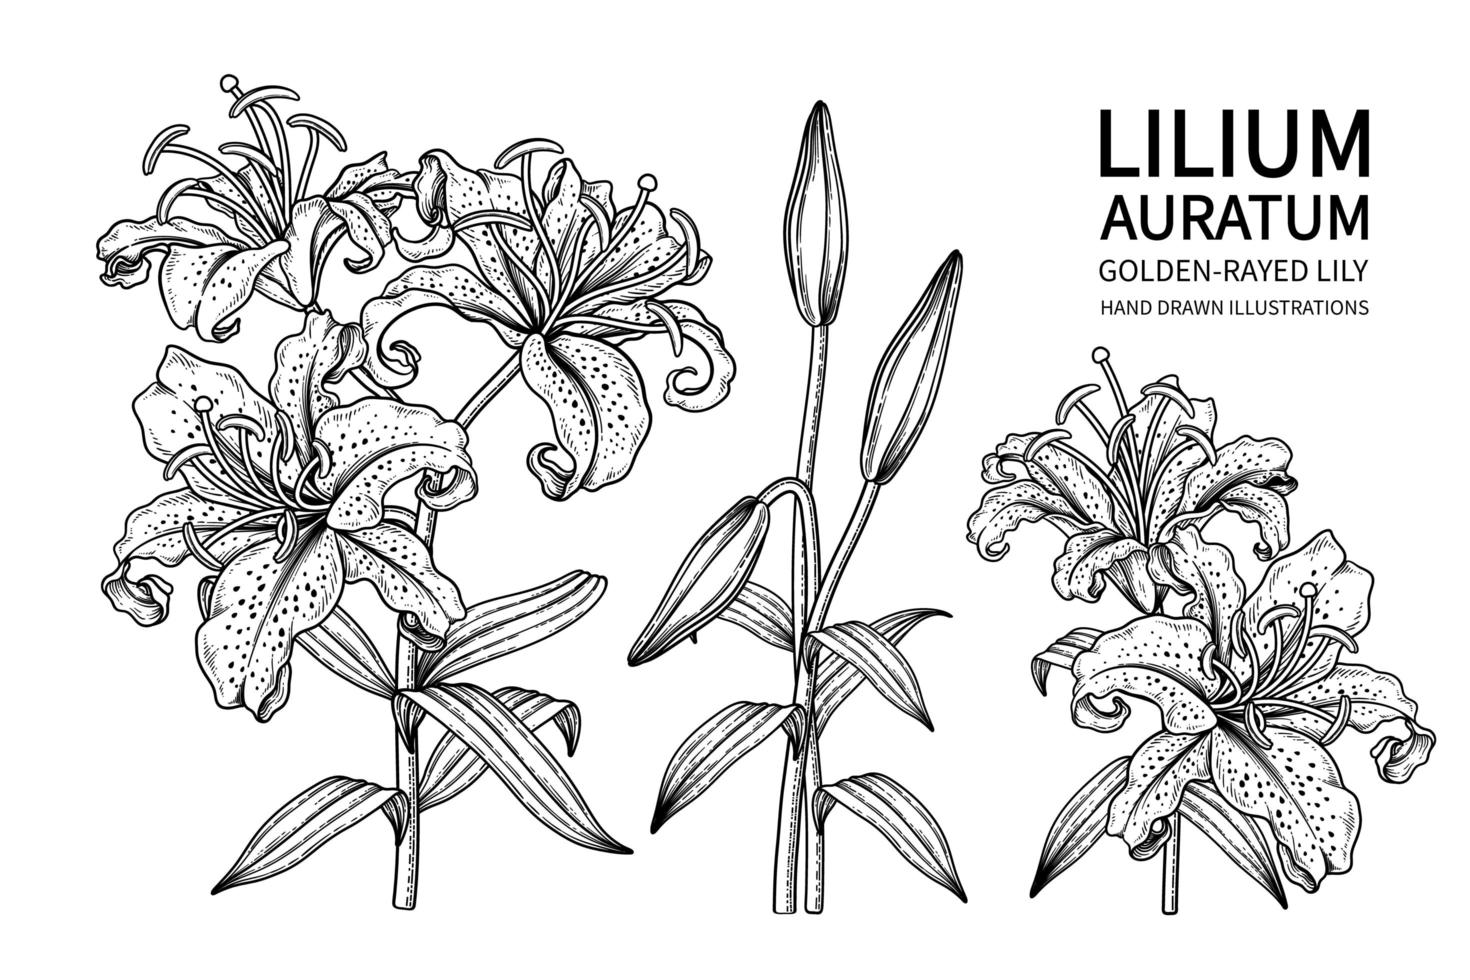 gren av gyllene strålar lilja eller lilium auratum blomma handritad skiss botaniska illustrationer dekorativ uppsättning vektor